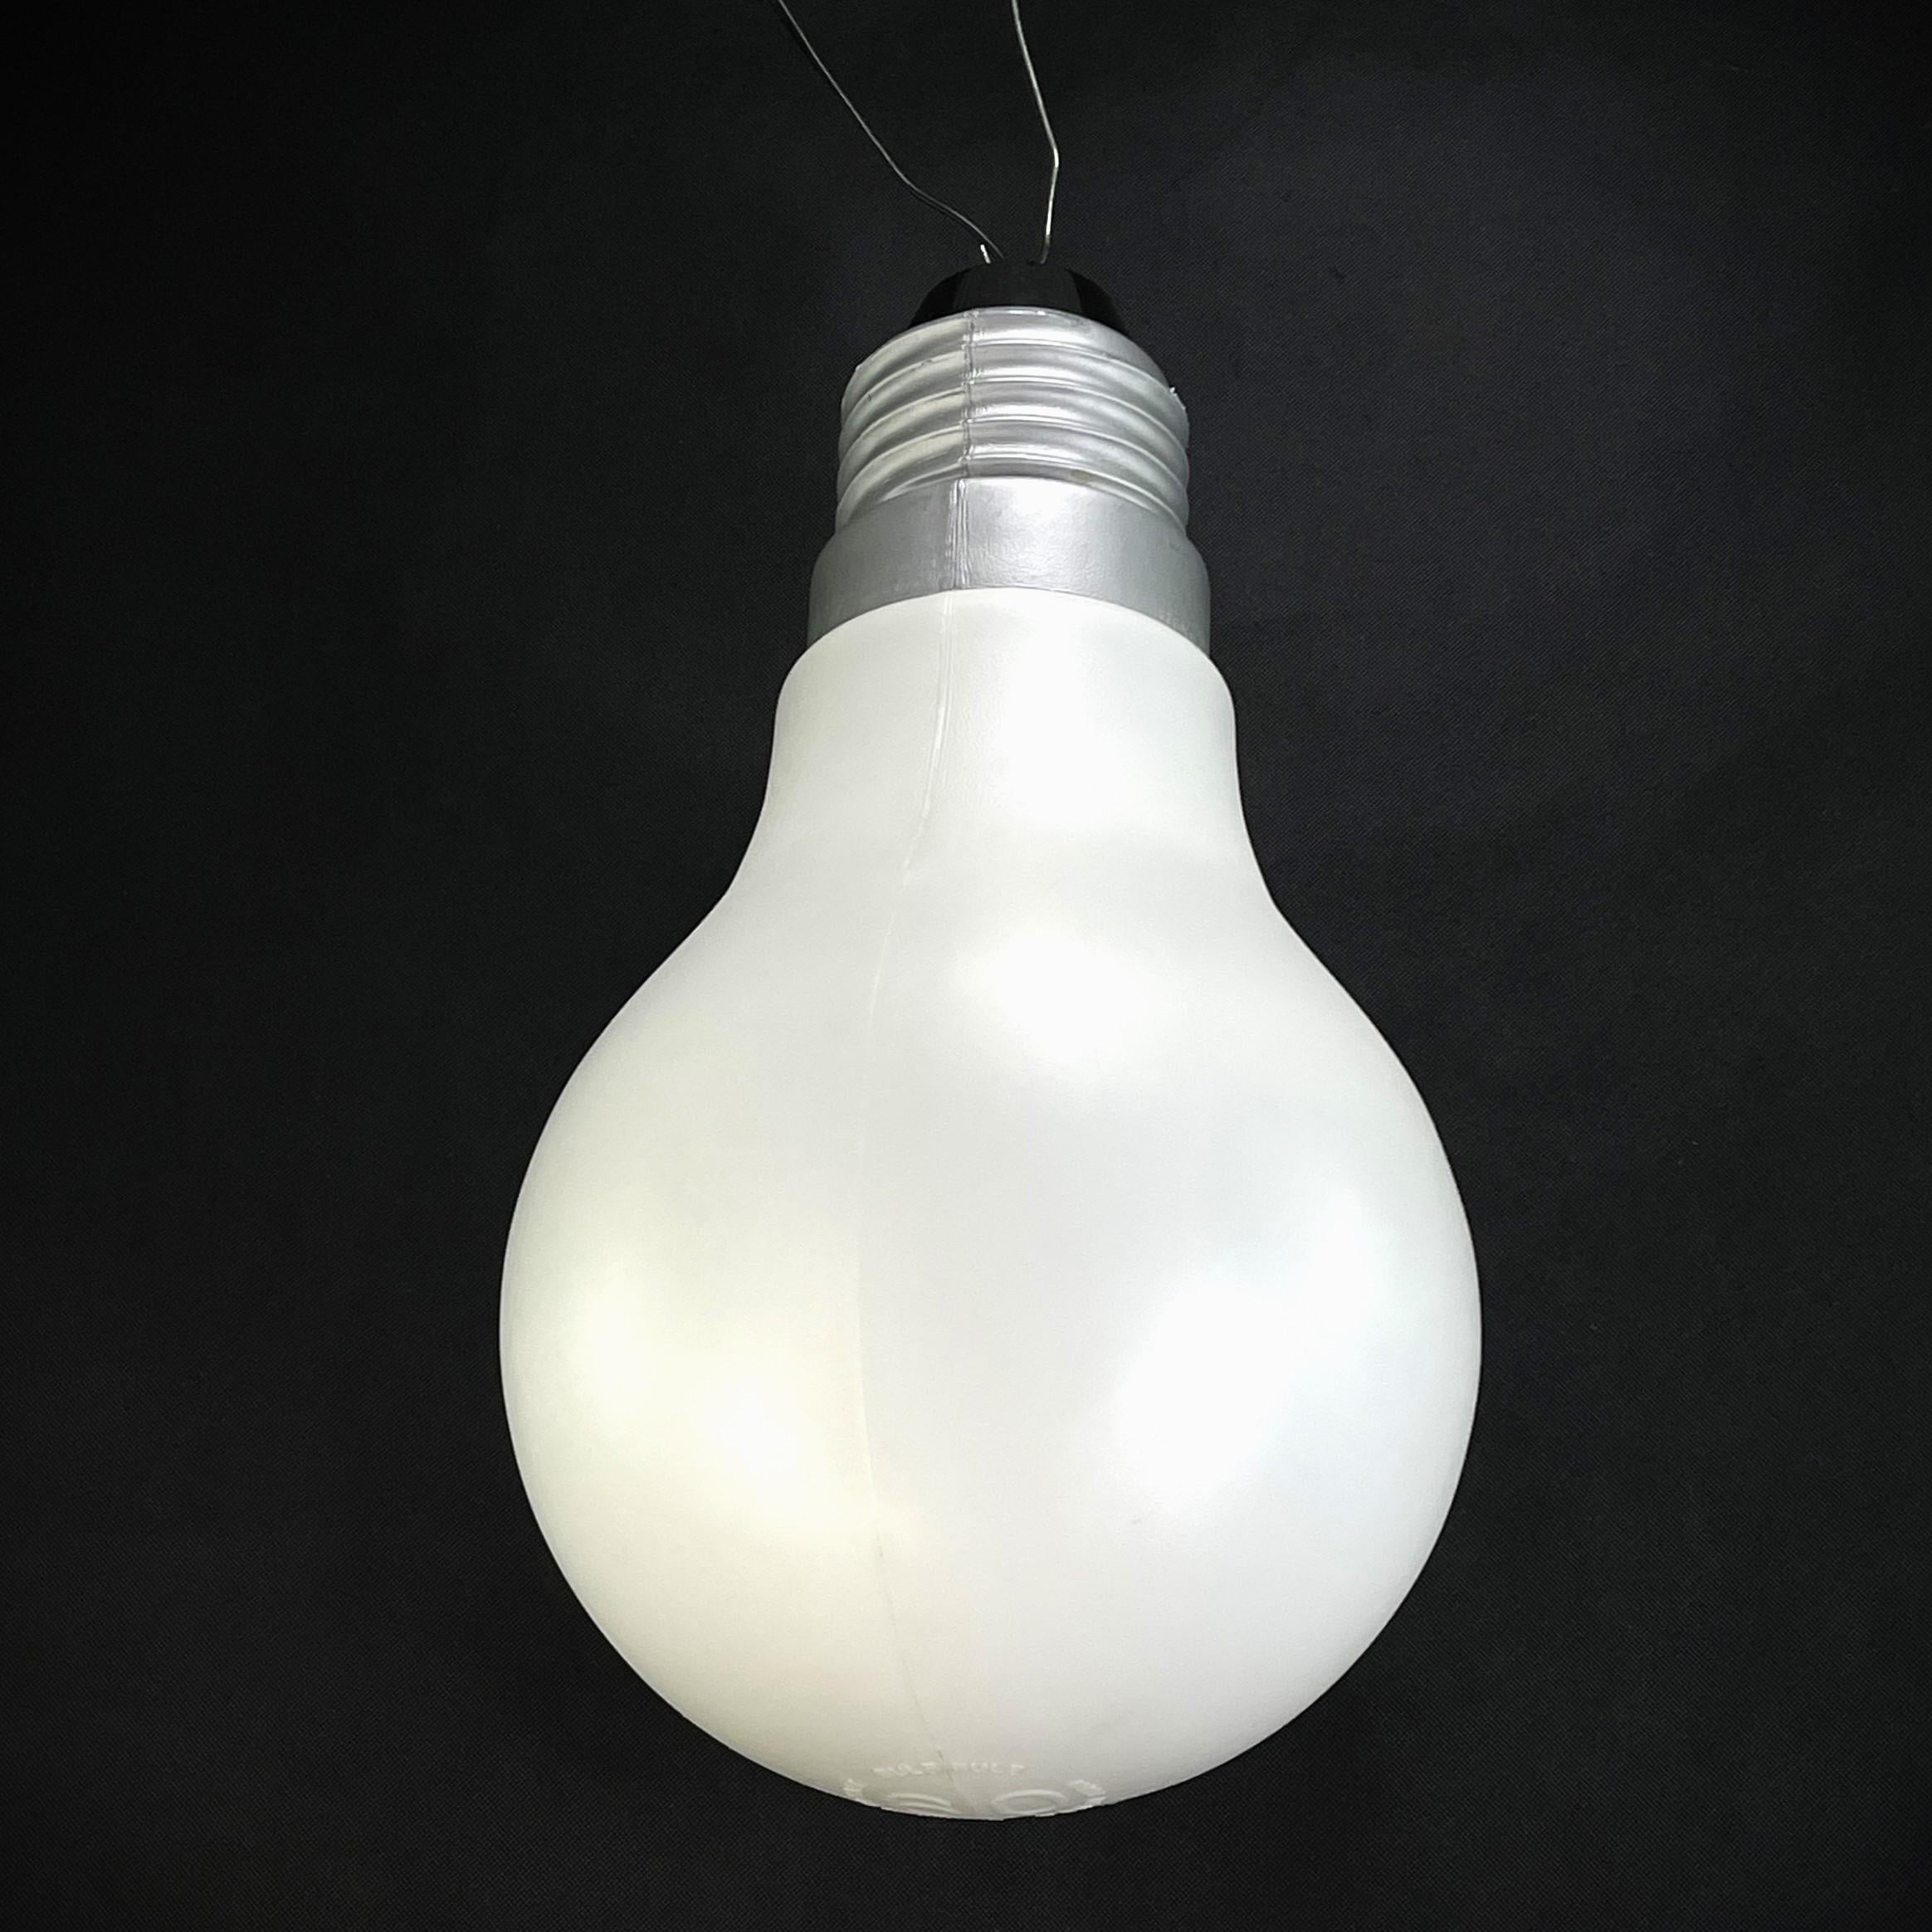 lightbulb floor lamp